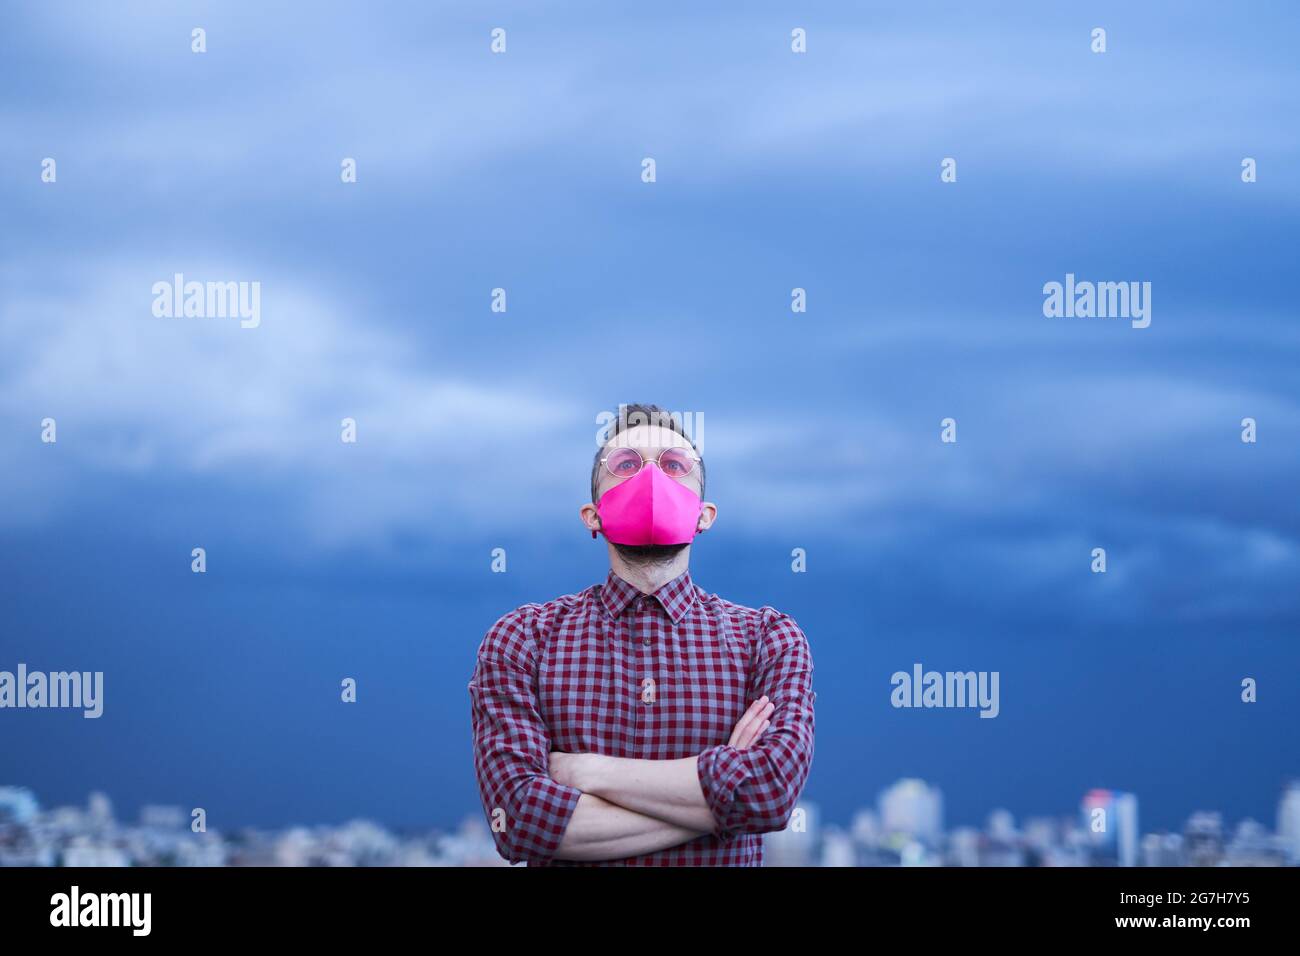 Concepto de esperanza, tema LGBTQ. Atractivo gay caucásico en máscara facial protectora rosa y anteojos rosas mirando con esperanza. Retrato de hombre con fondo lluvioso y horizonte urbano Foto de stock